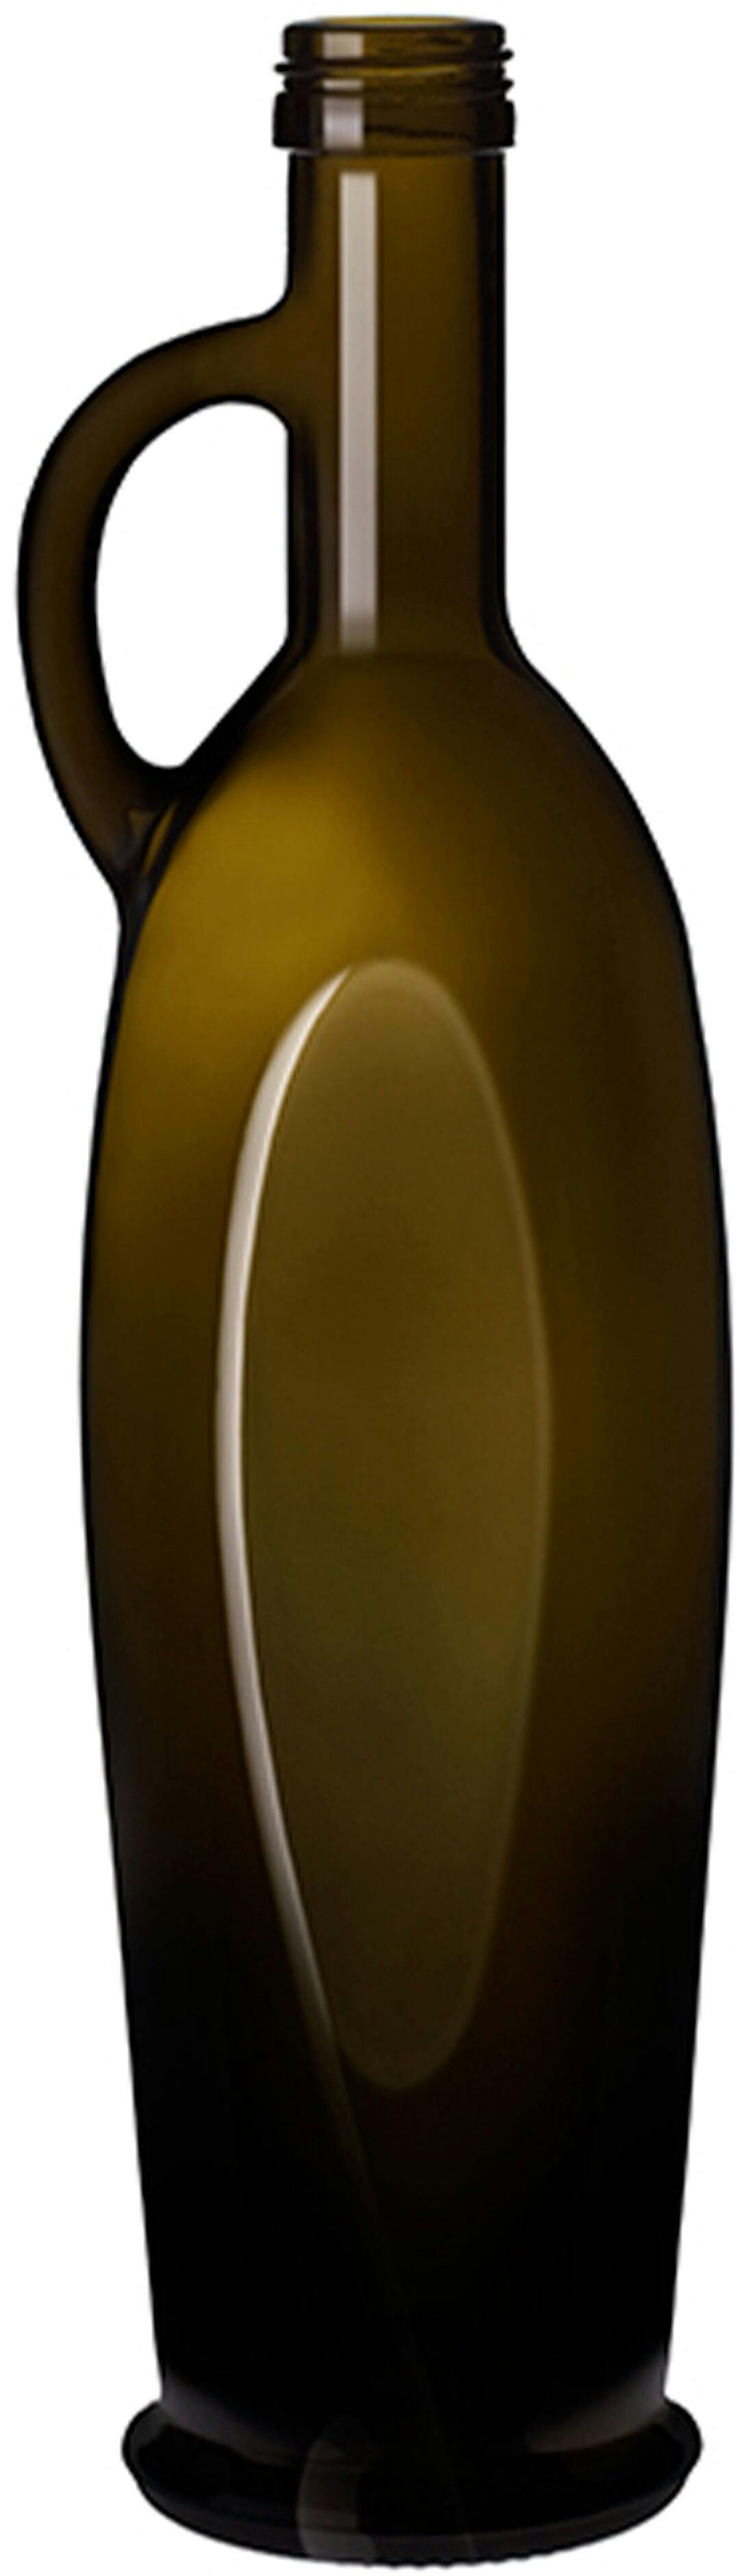 Bottle ANFORA SIVIGLIA 500 P31,5 VA